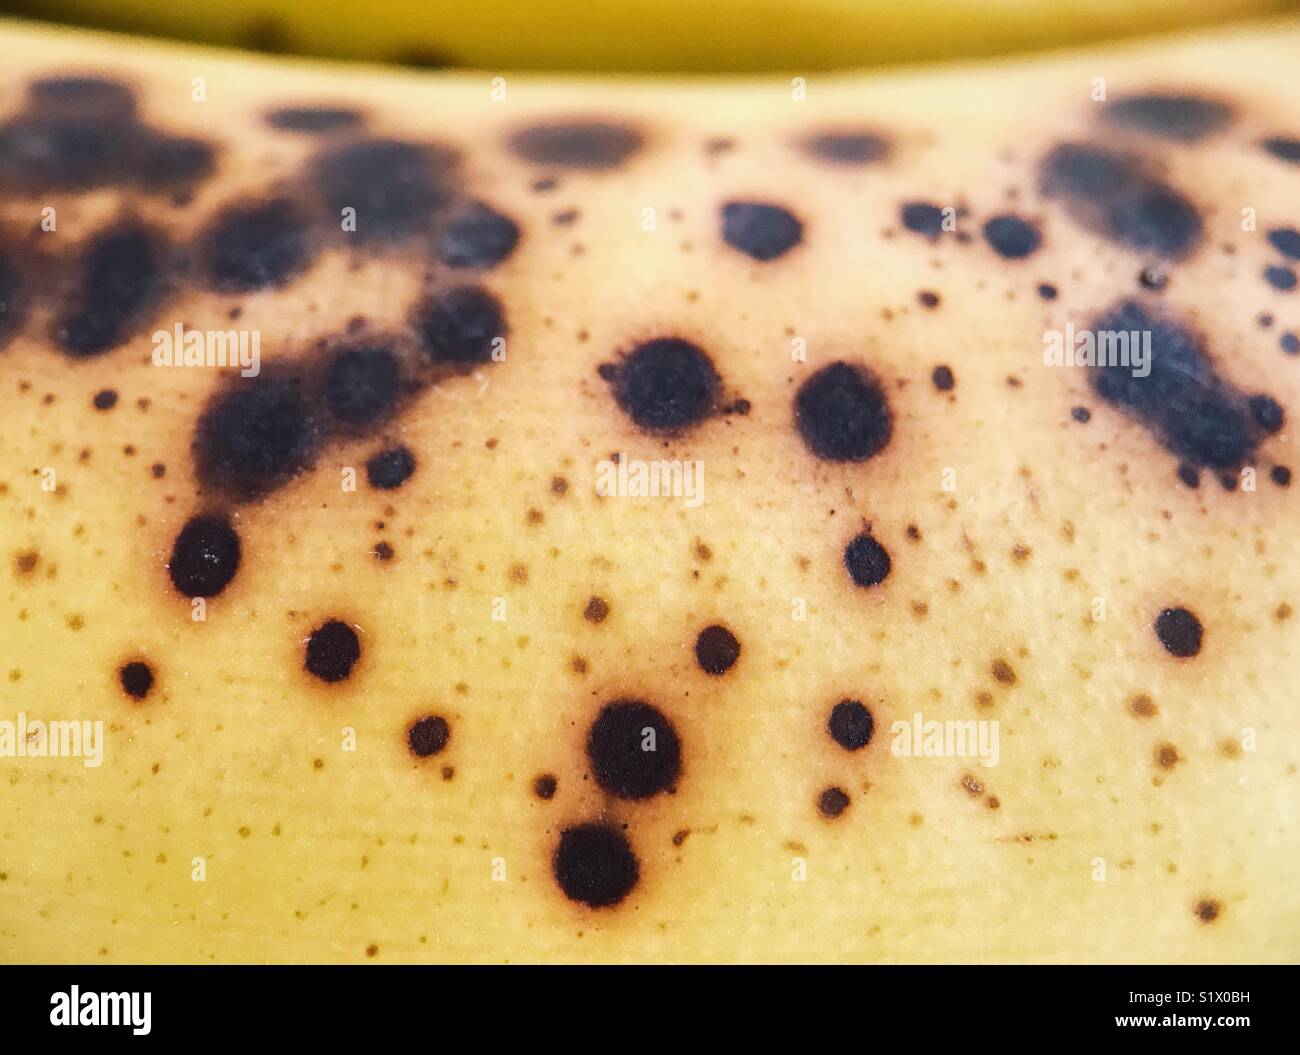 La presenza di macchie scure su una banana stramature. Foto Stock